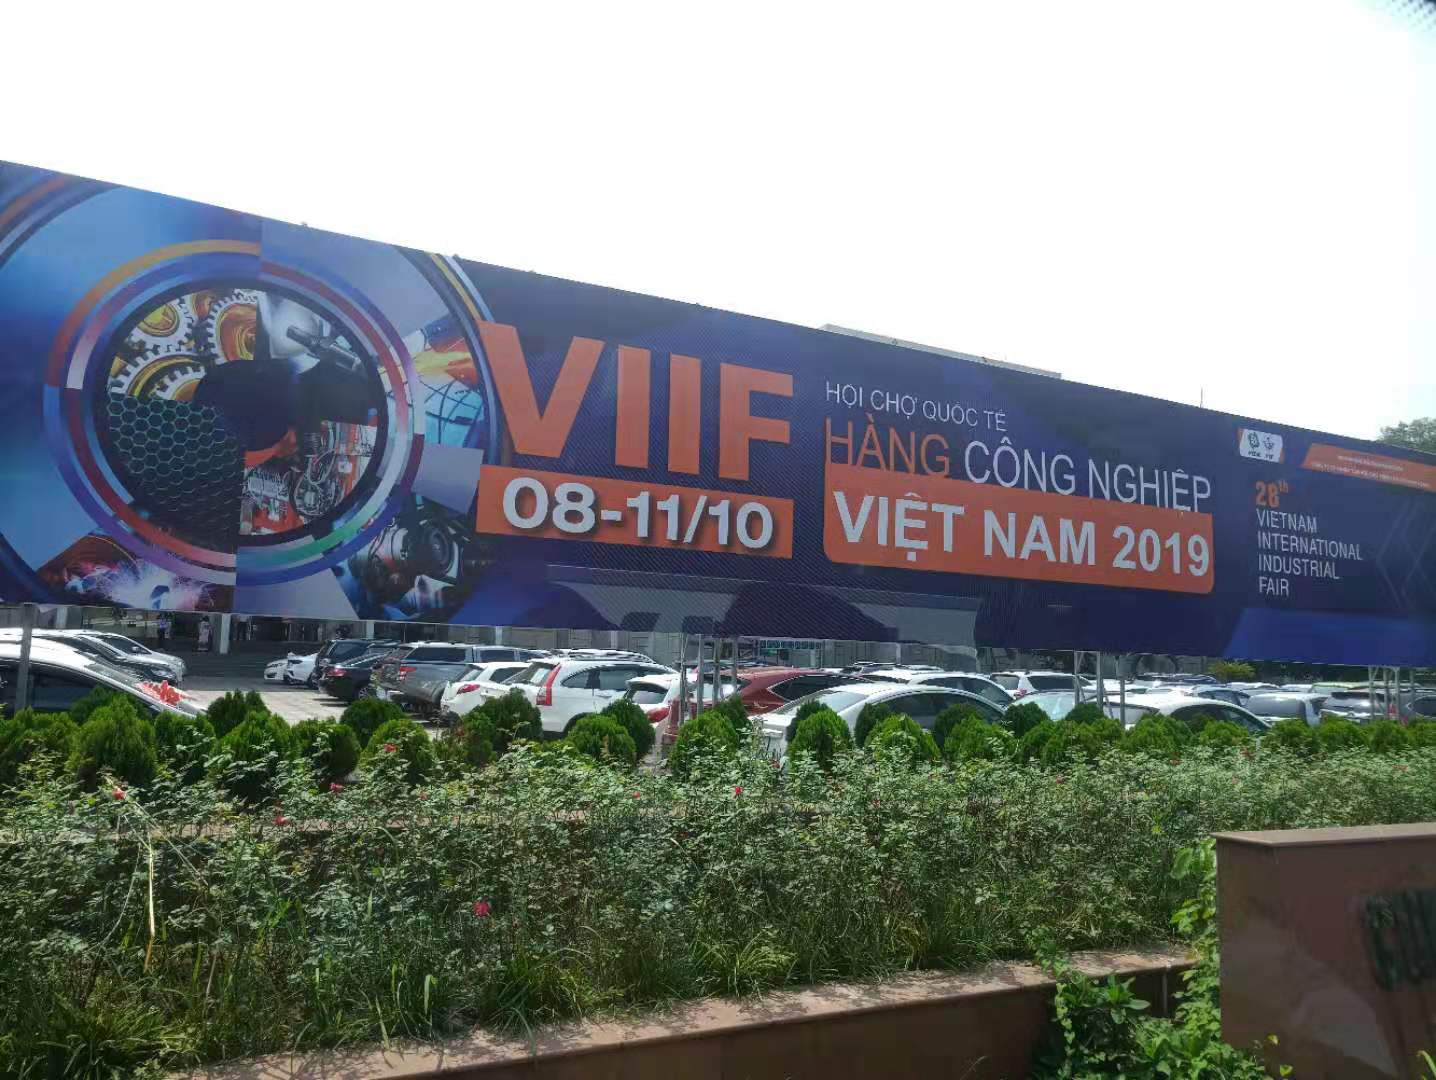 安徽宇锋即将参展第27届越南国际工业博览会